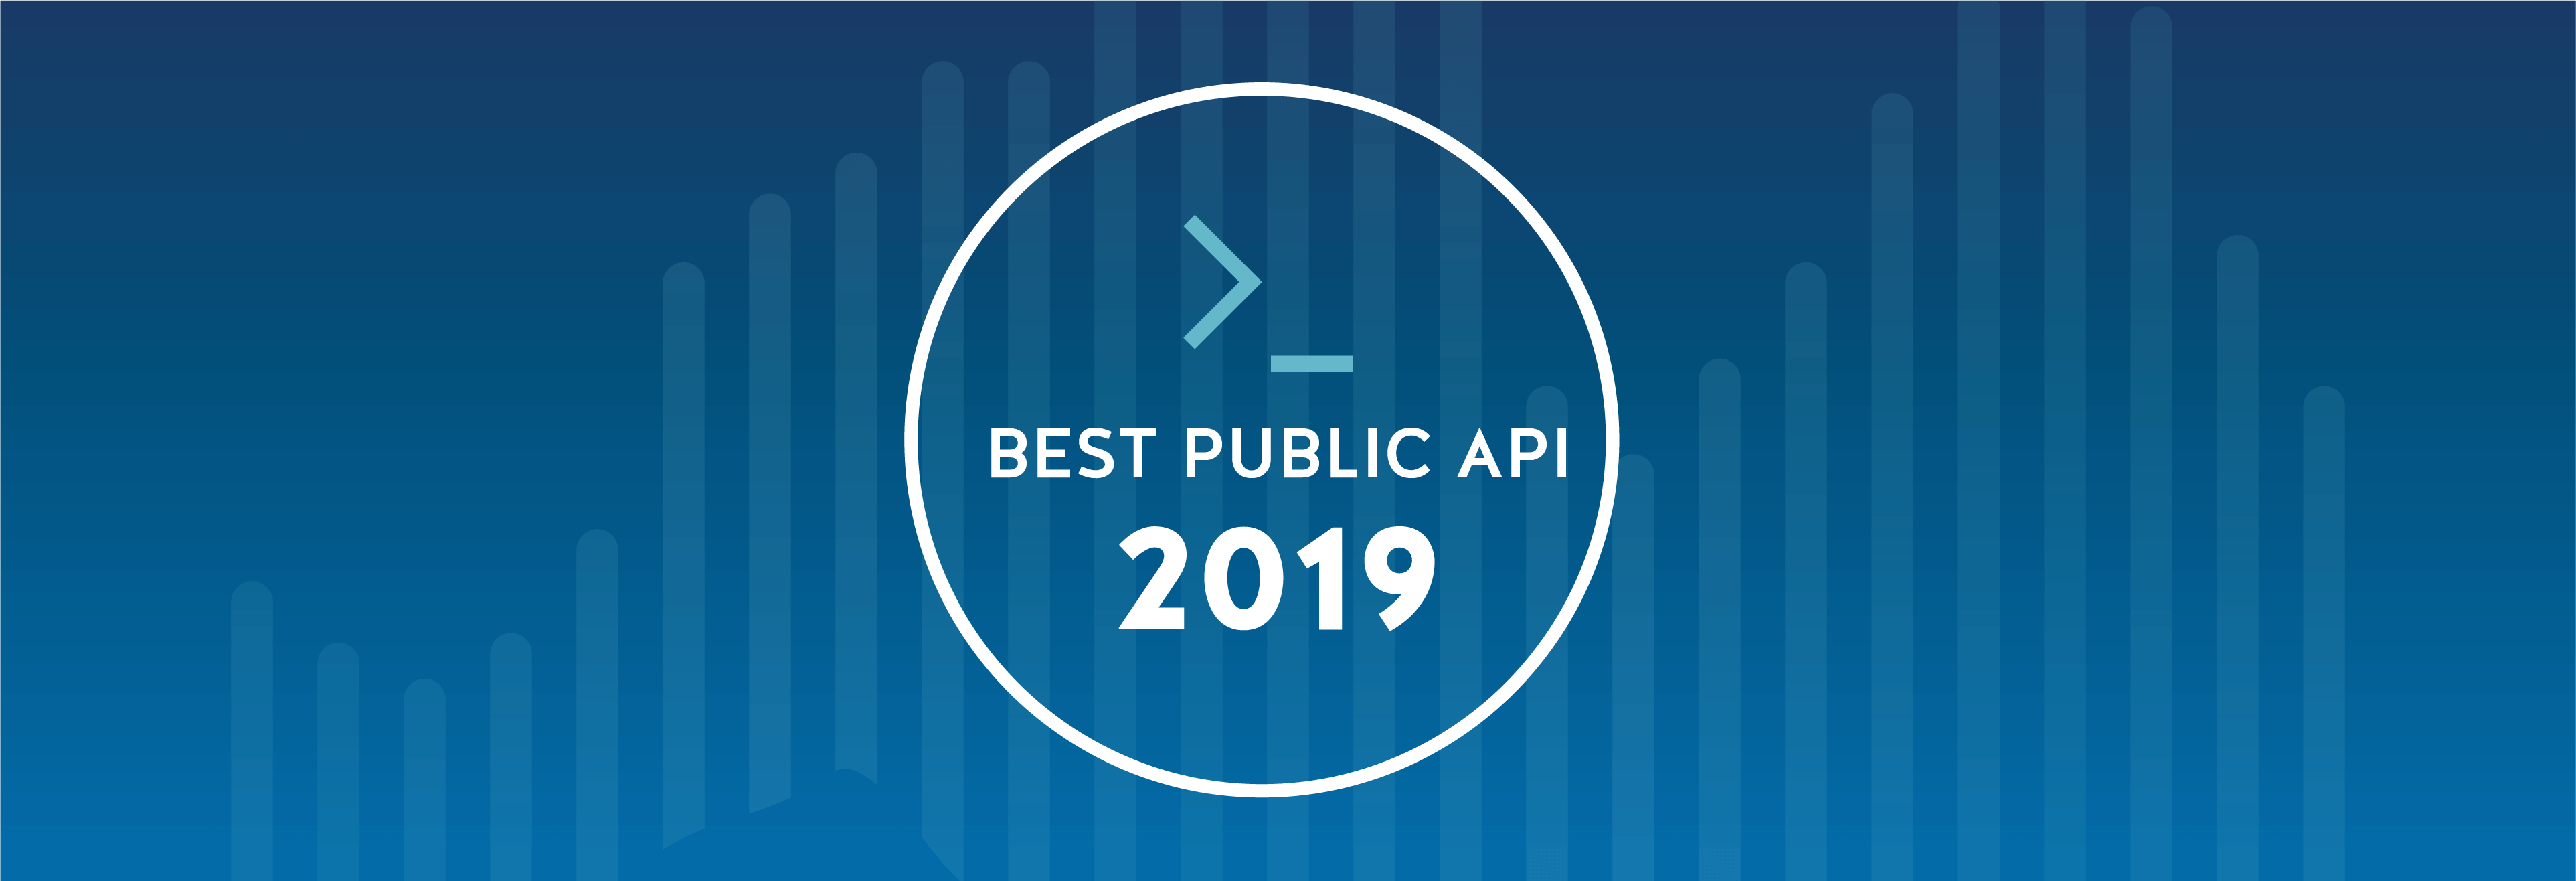 best-public-api-2019